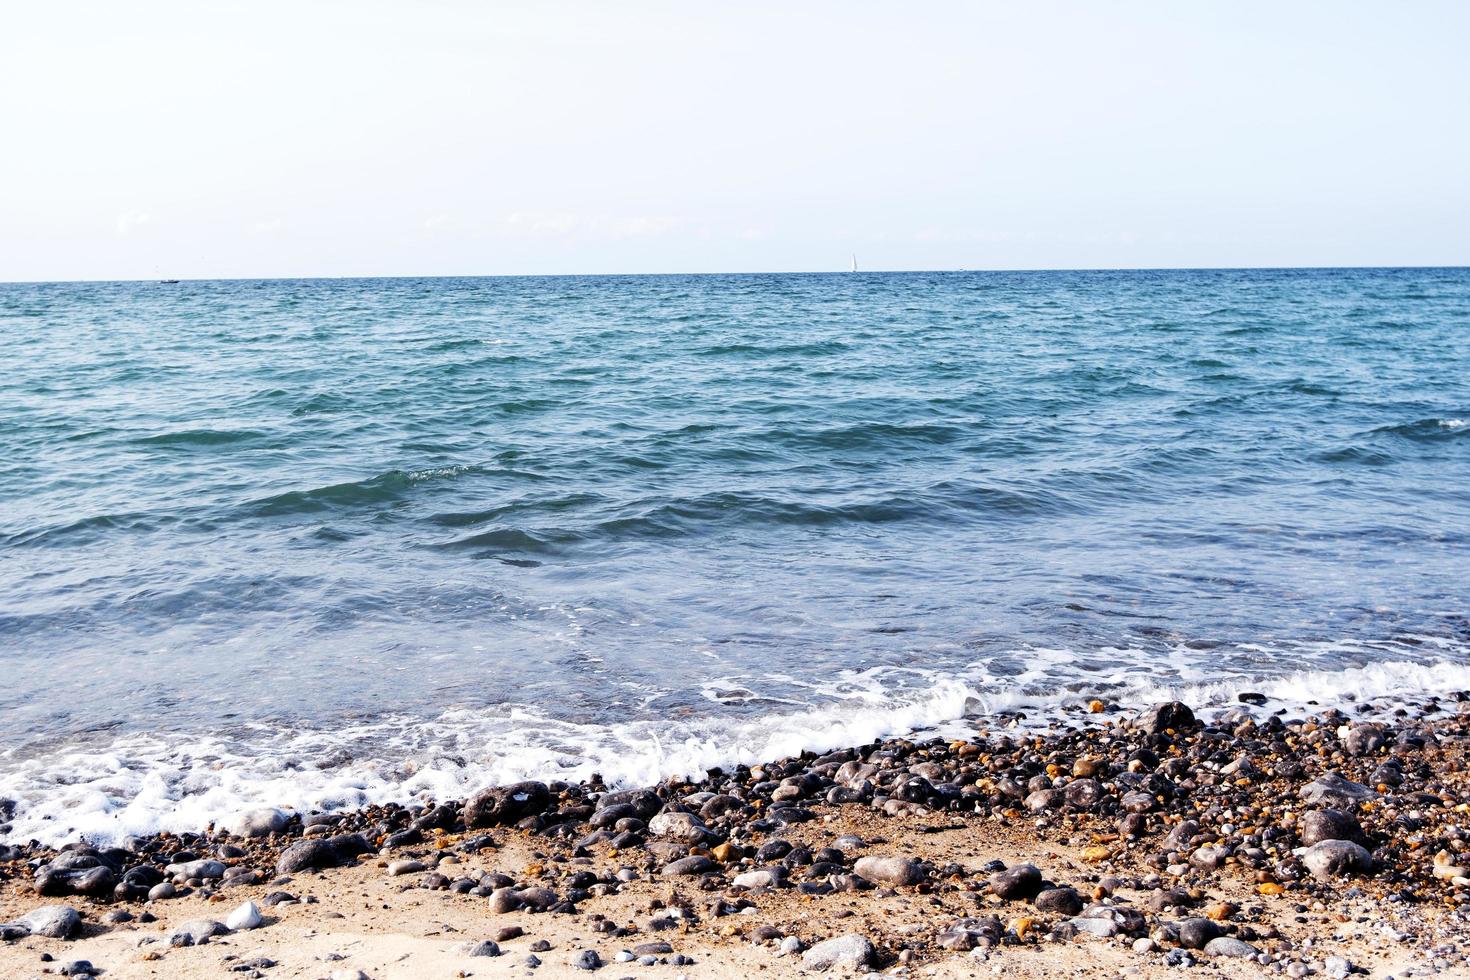 tedere oceaangolven en kiezelstenen aan de kustlijn, blauwe zeewateren op een zonnige dag, prachtige natuurlijke achtergrond van het zeegezicht foto